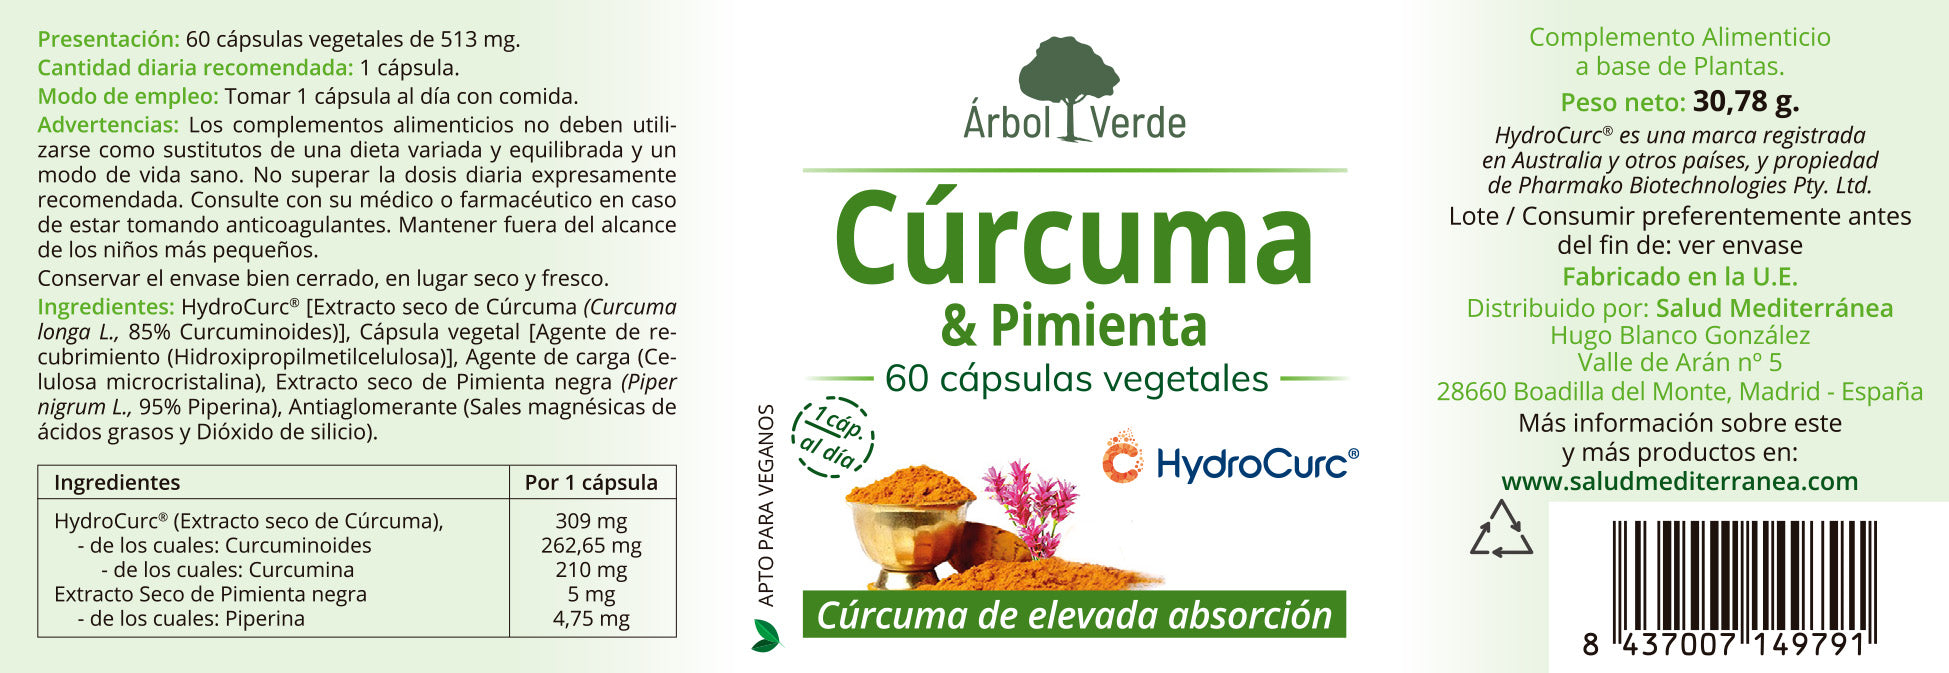 Curcuma & Pimienta - 60 Capsulas Vegetales. Arbol Verde